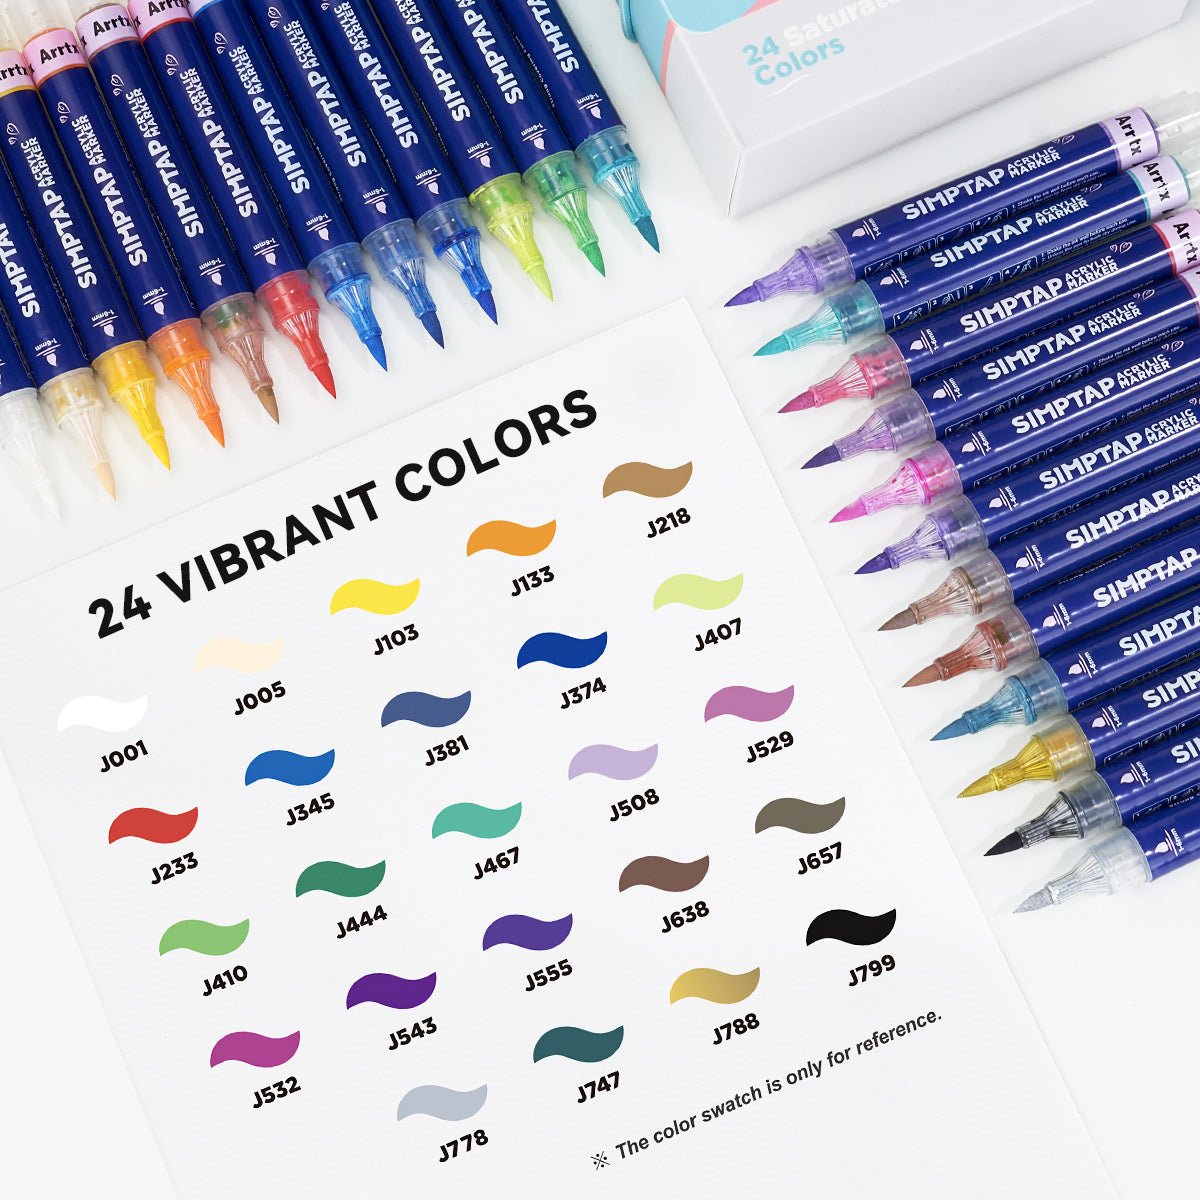 Arrtx Simptap Acrylic Marker 24 Colors